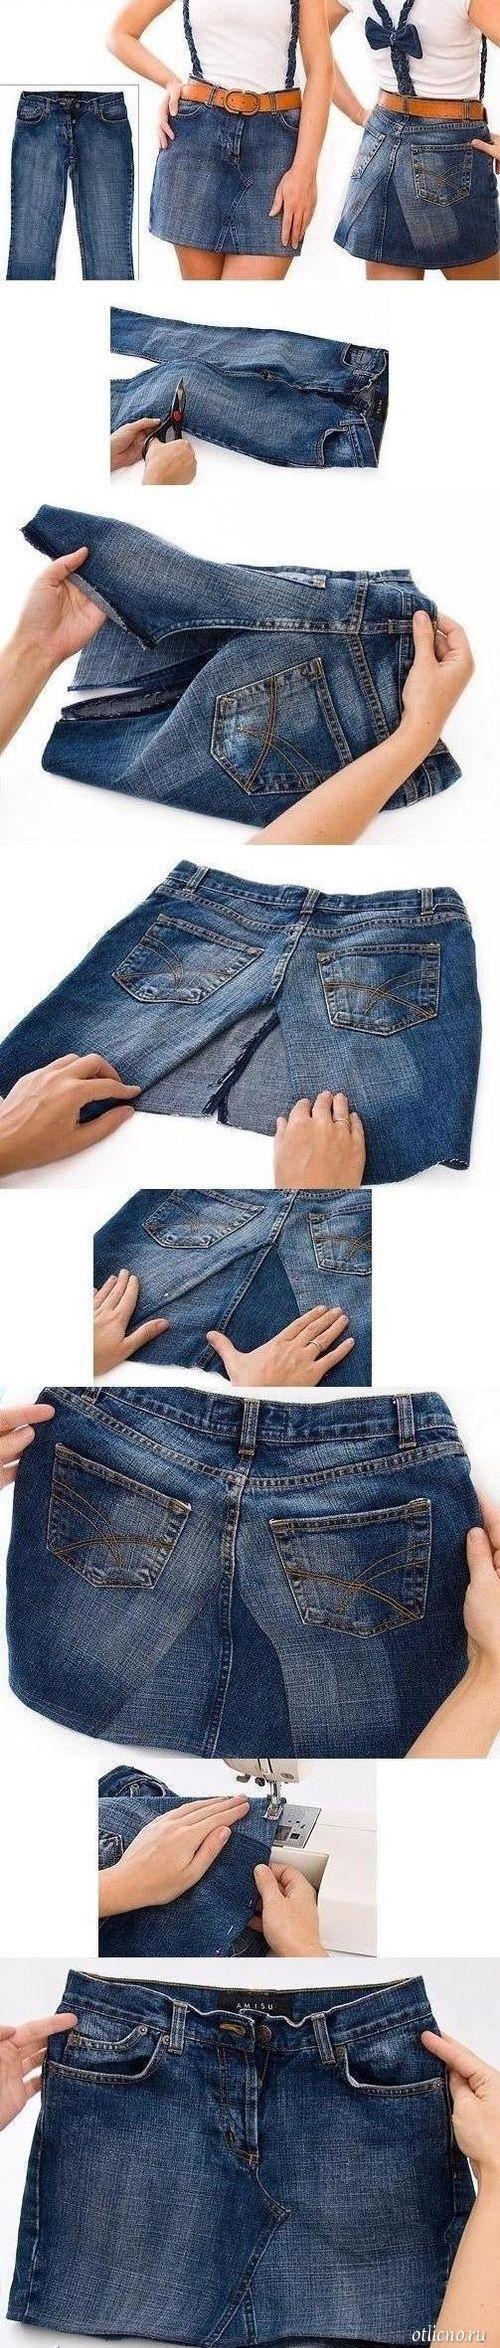 Как сделать юбку из старых джинсов своими руками